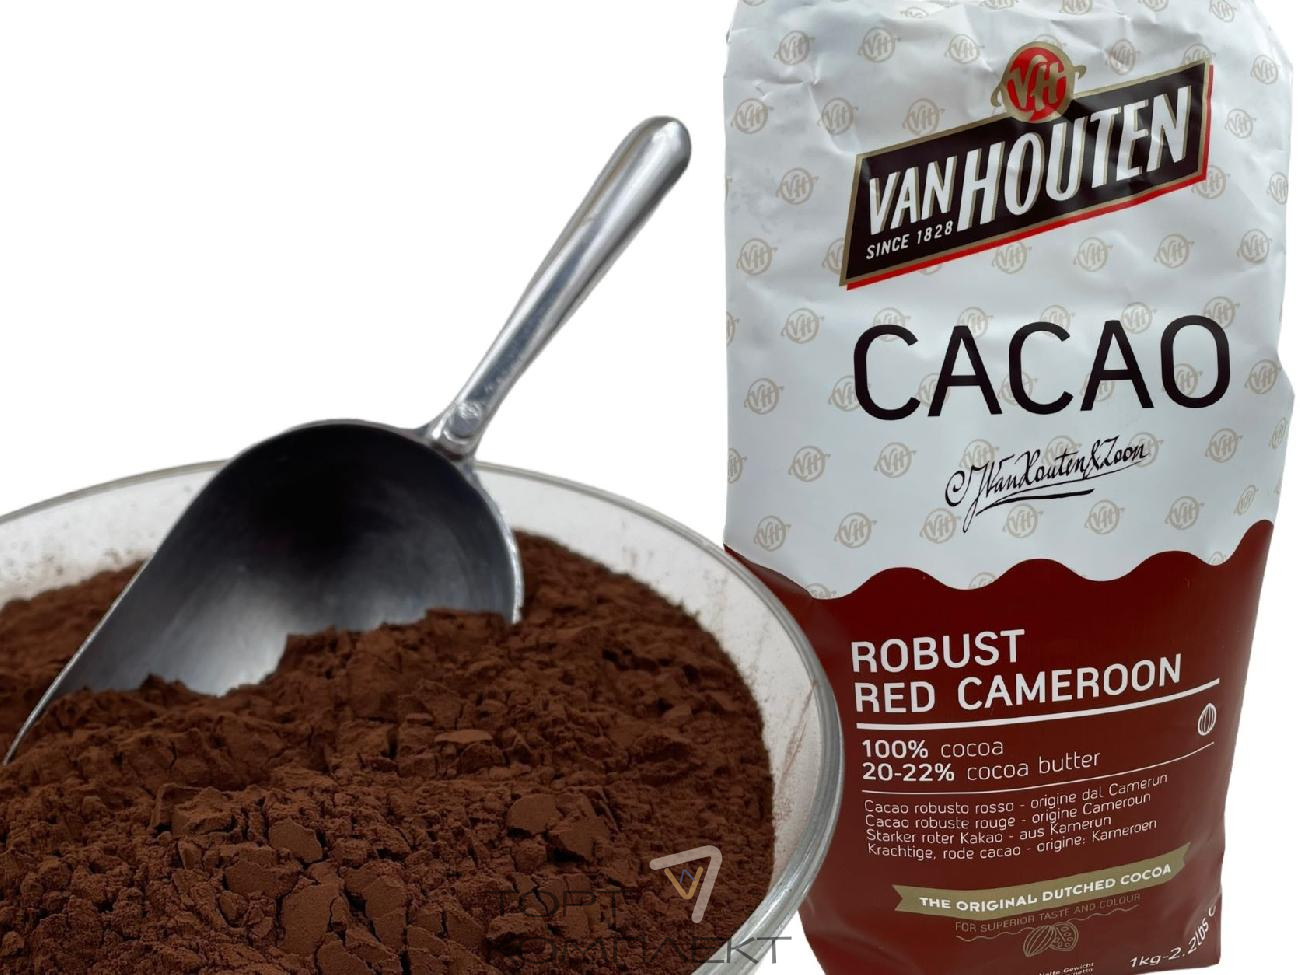 Маска с какао для волос: отзывы и рецепты